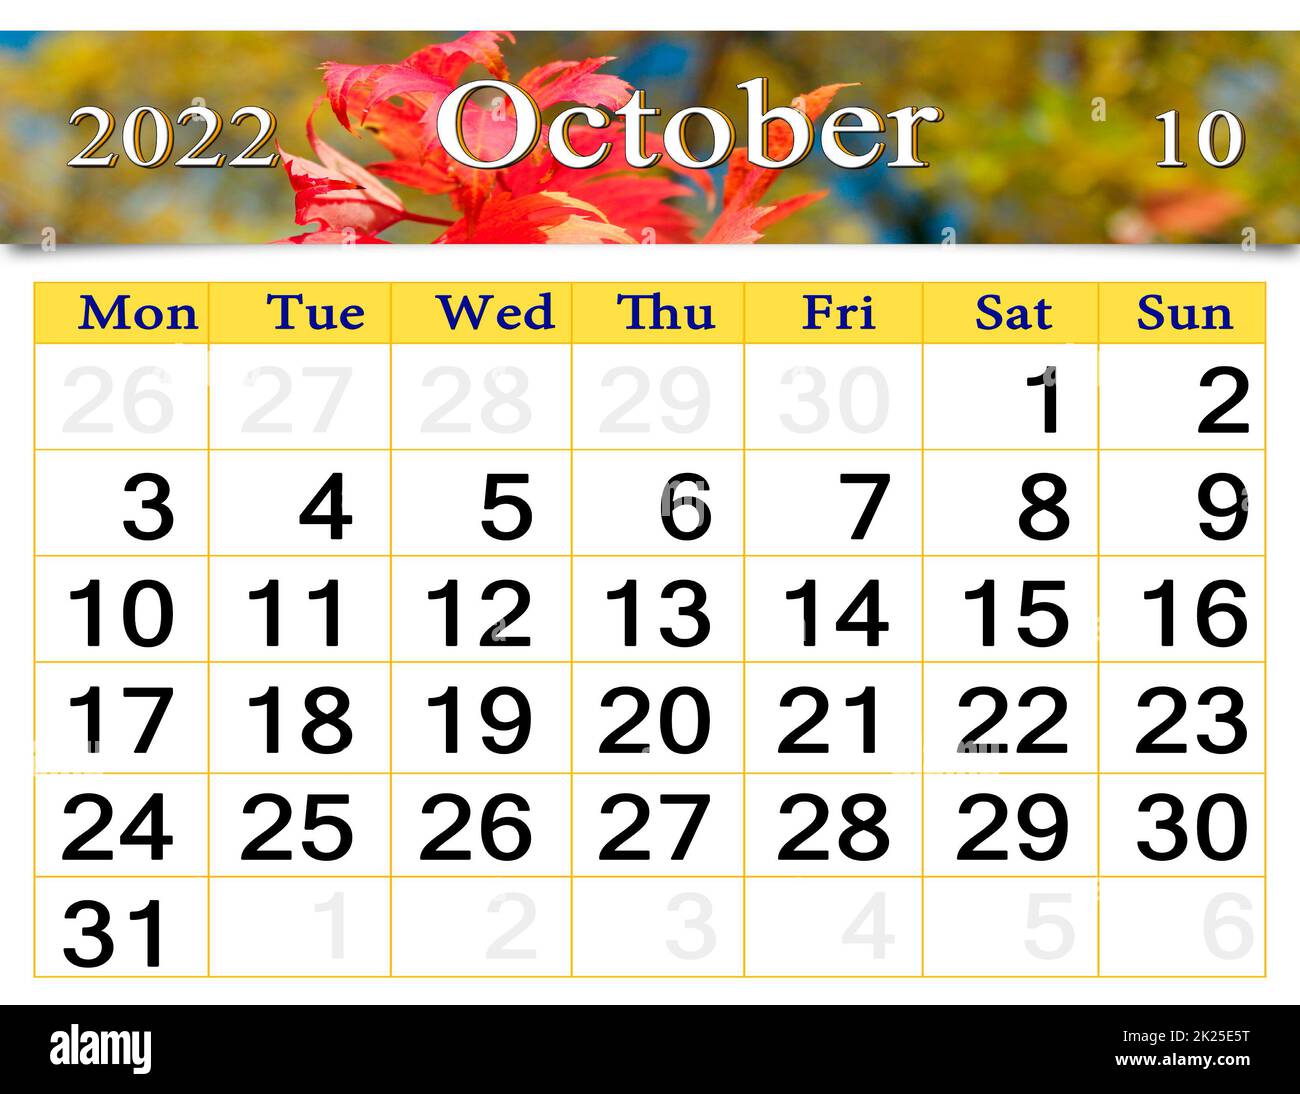 Calendario octubre 2022 Imágenes recortadas de stock - Alamy